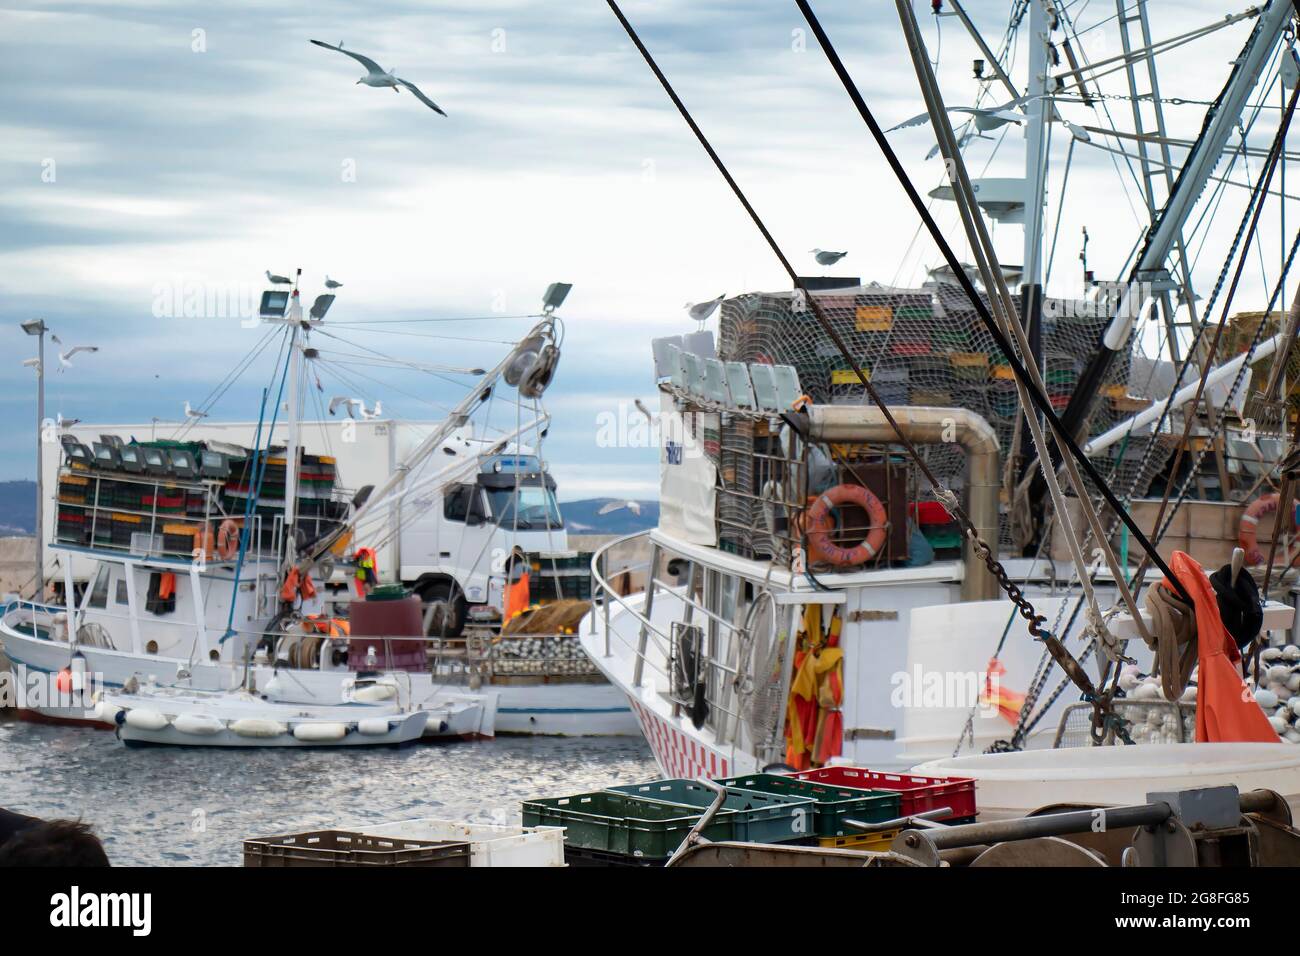 Tribunj, Croatie - 4 juillet 2021 : bateaux de pêche commerciale à l'aube d'été amarrés sur un quai Banque D'Images